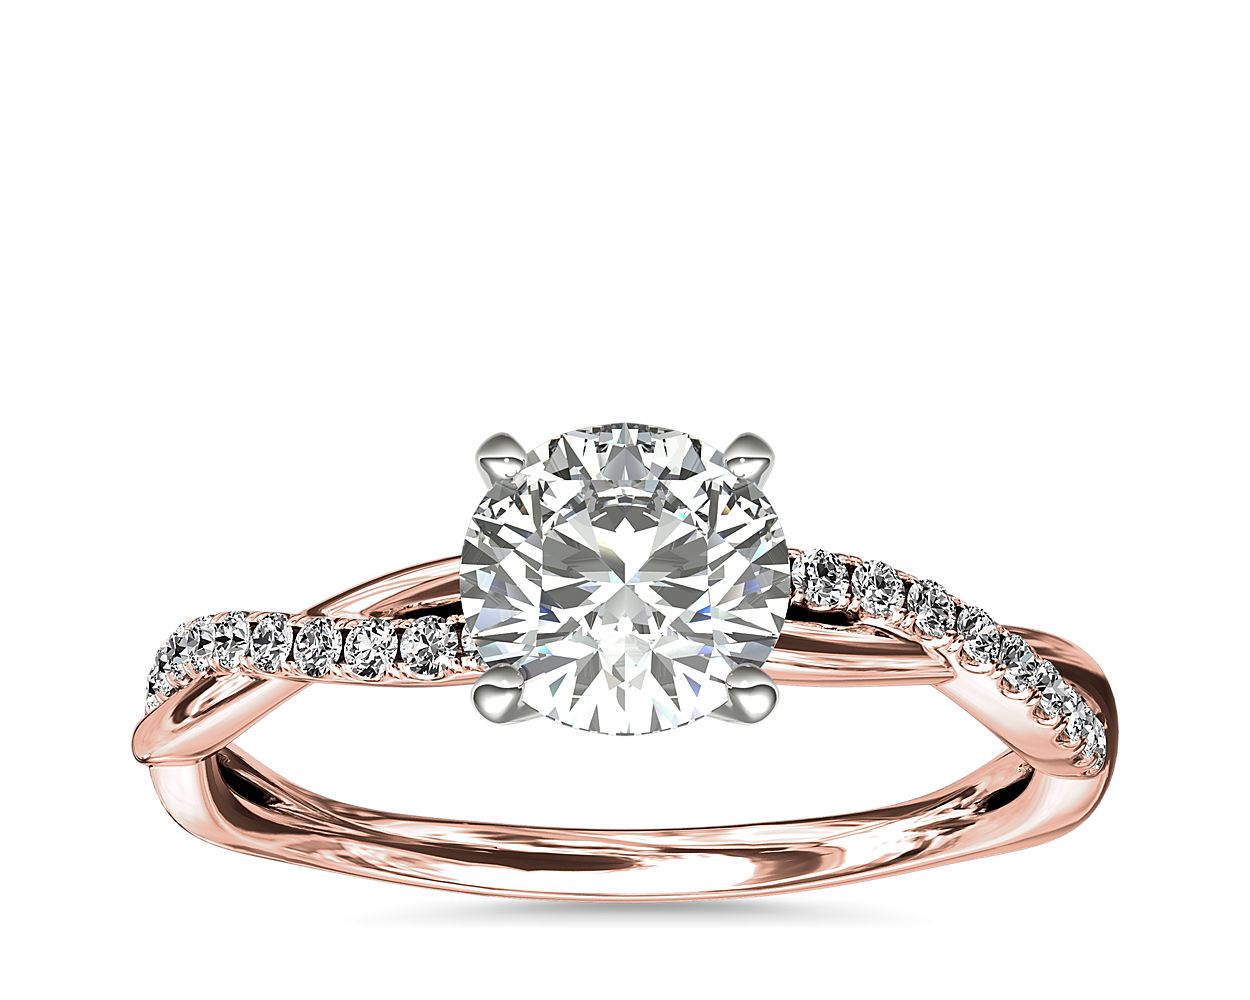 Excursie Zorgvuldig lezen Wonderbaarlijk Petite Twist Diamond Engagement Ring in 14k Rose Gold (1/10 ct. tw.)